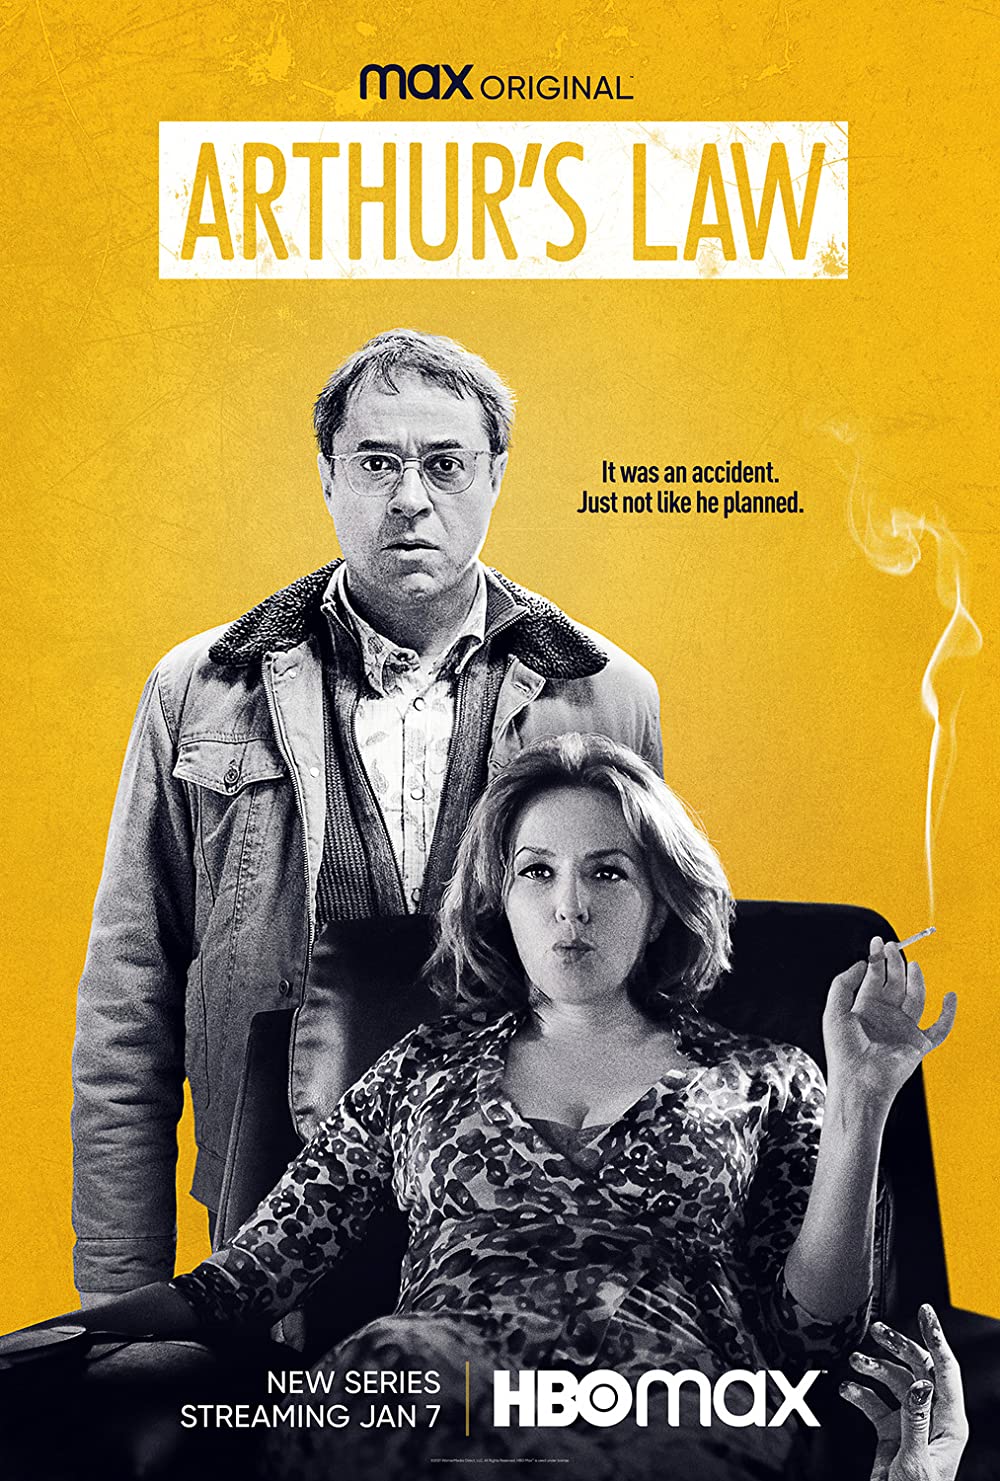 Filmbeschreibung zu Arthurs Gesetz